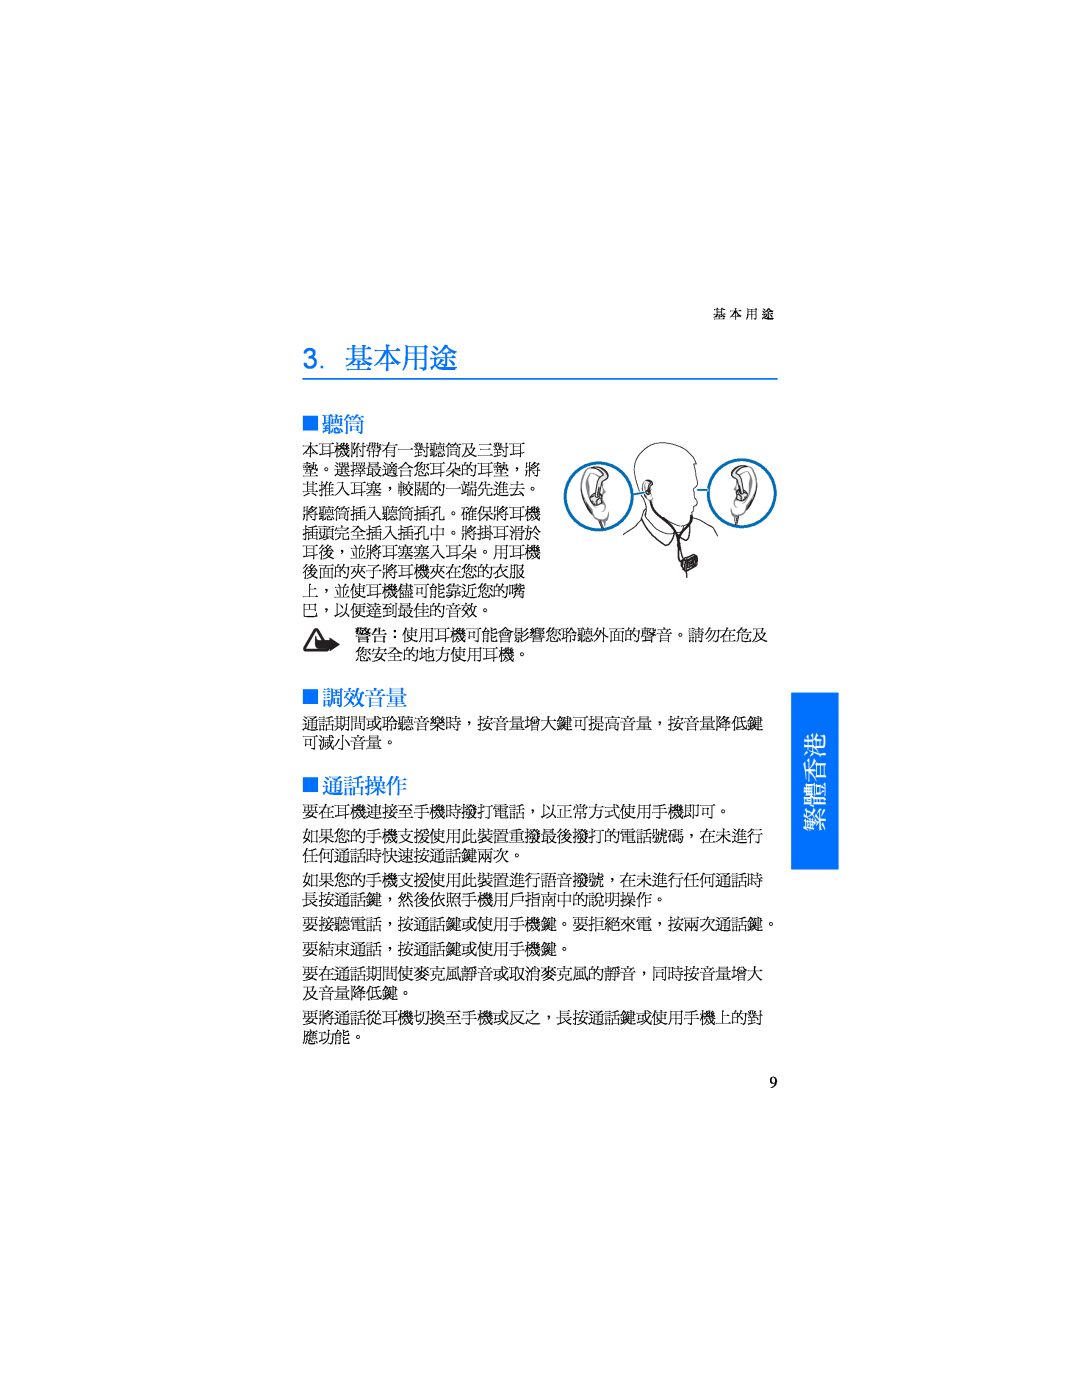 Nokia BH-500 manual 3.基本用途, 調效音量, 通話操作, 繁體香港 